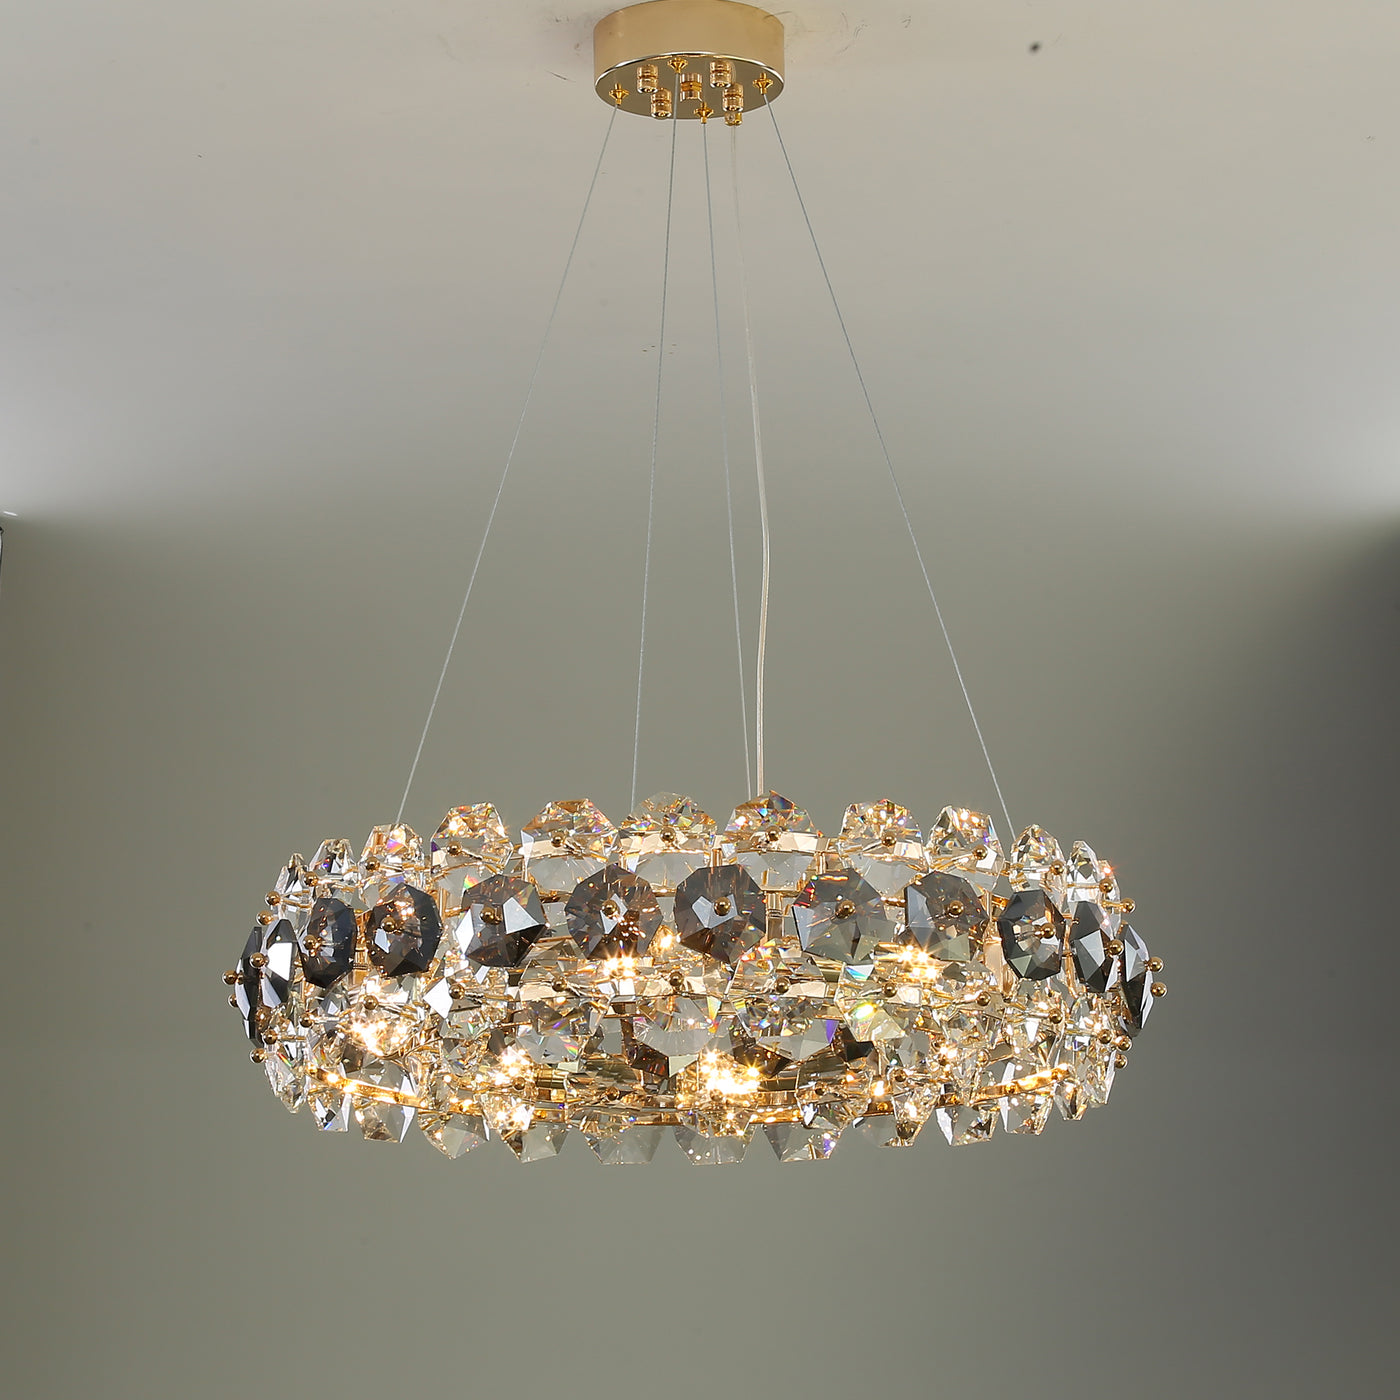 Luxury round crystal chandelier